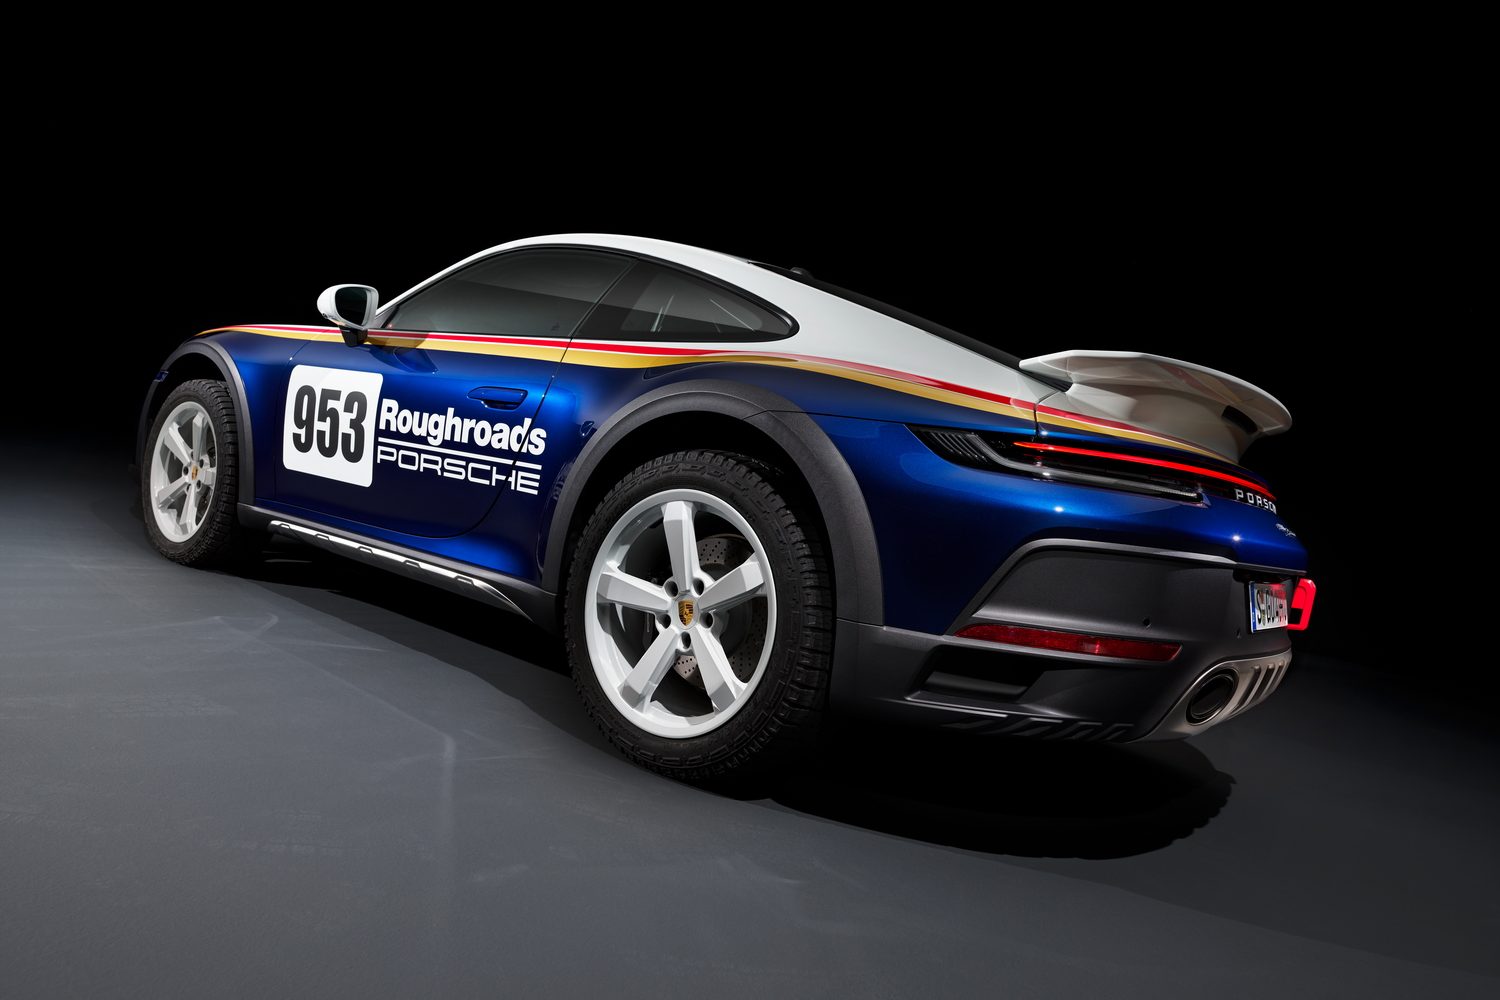 Porsche 911 Dakar for off-road